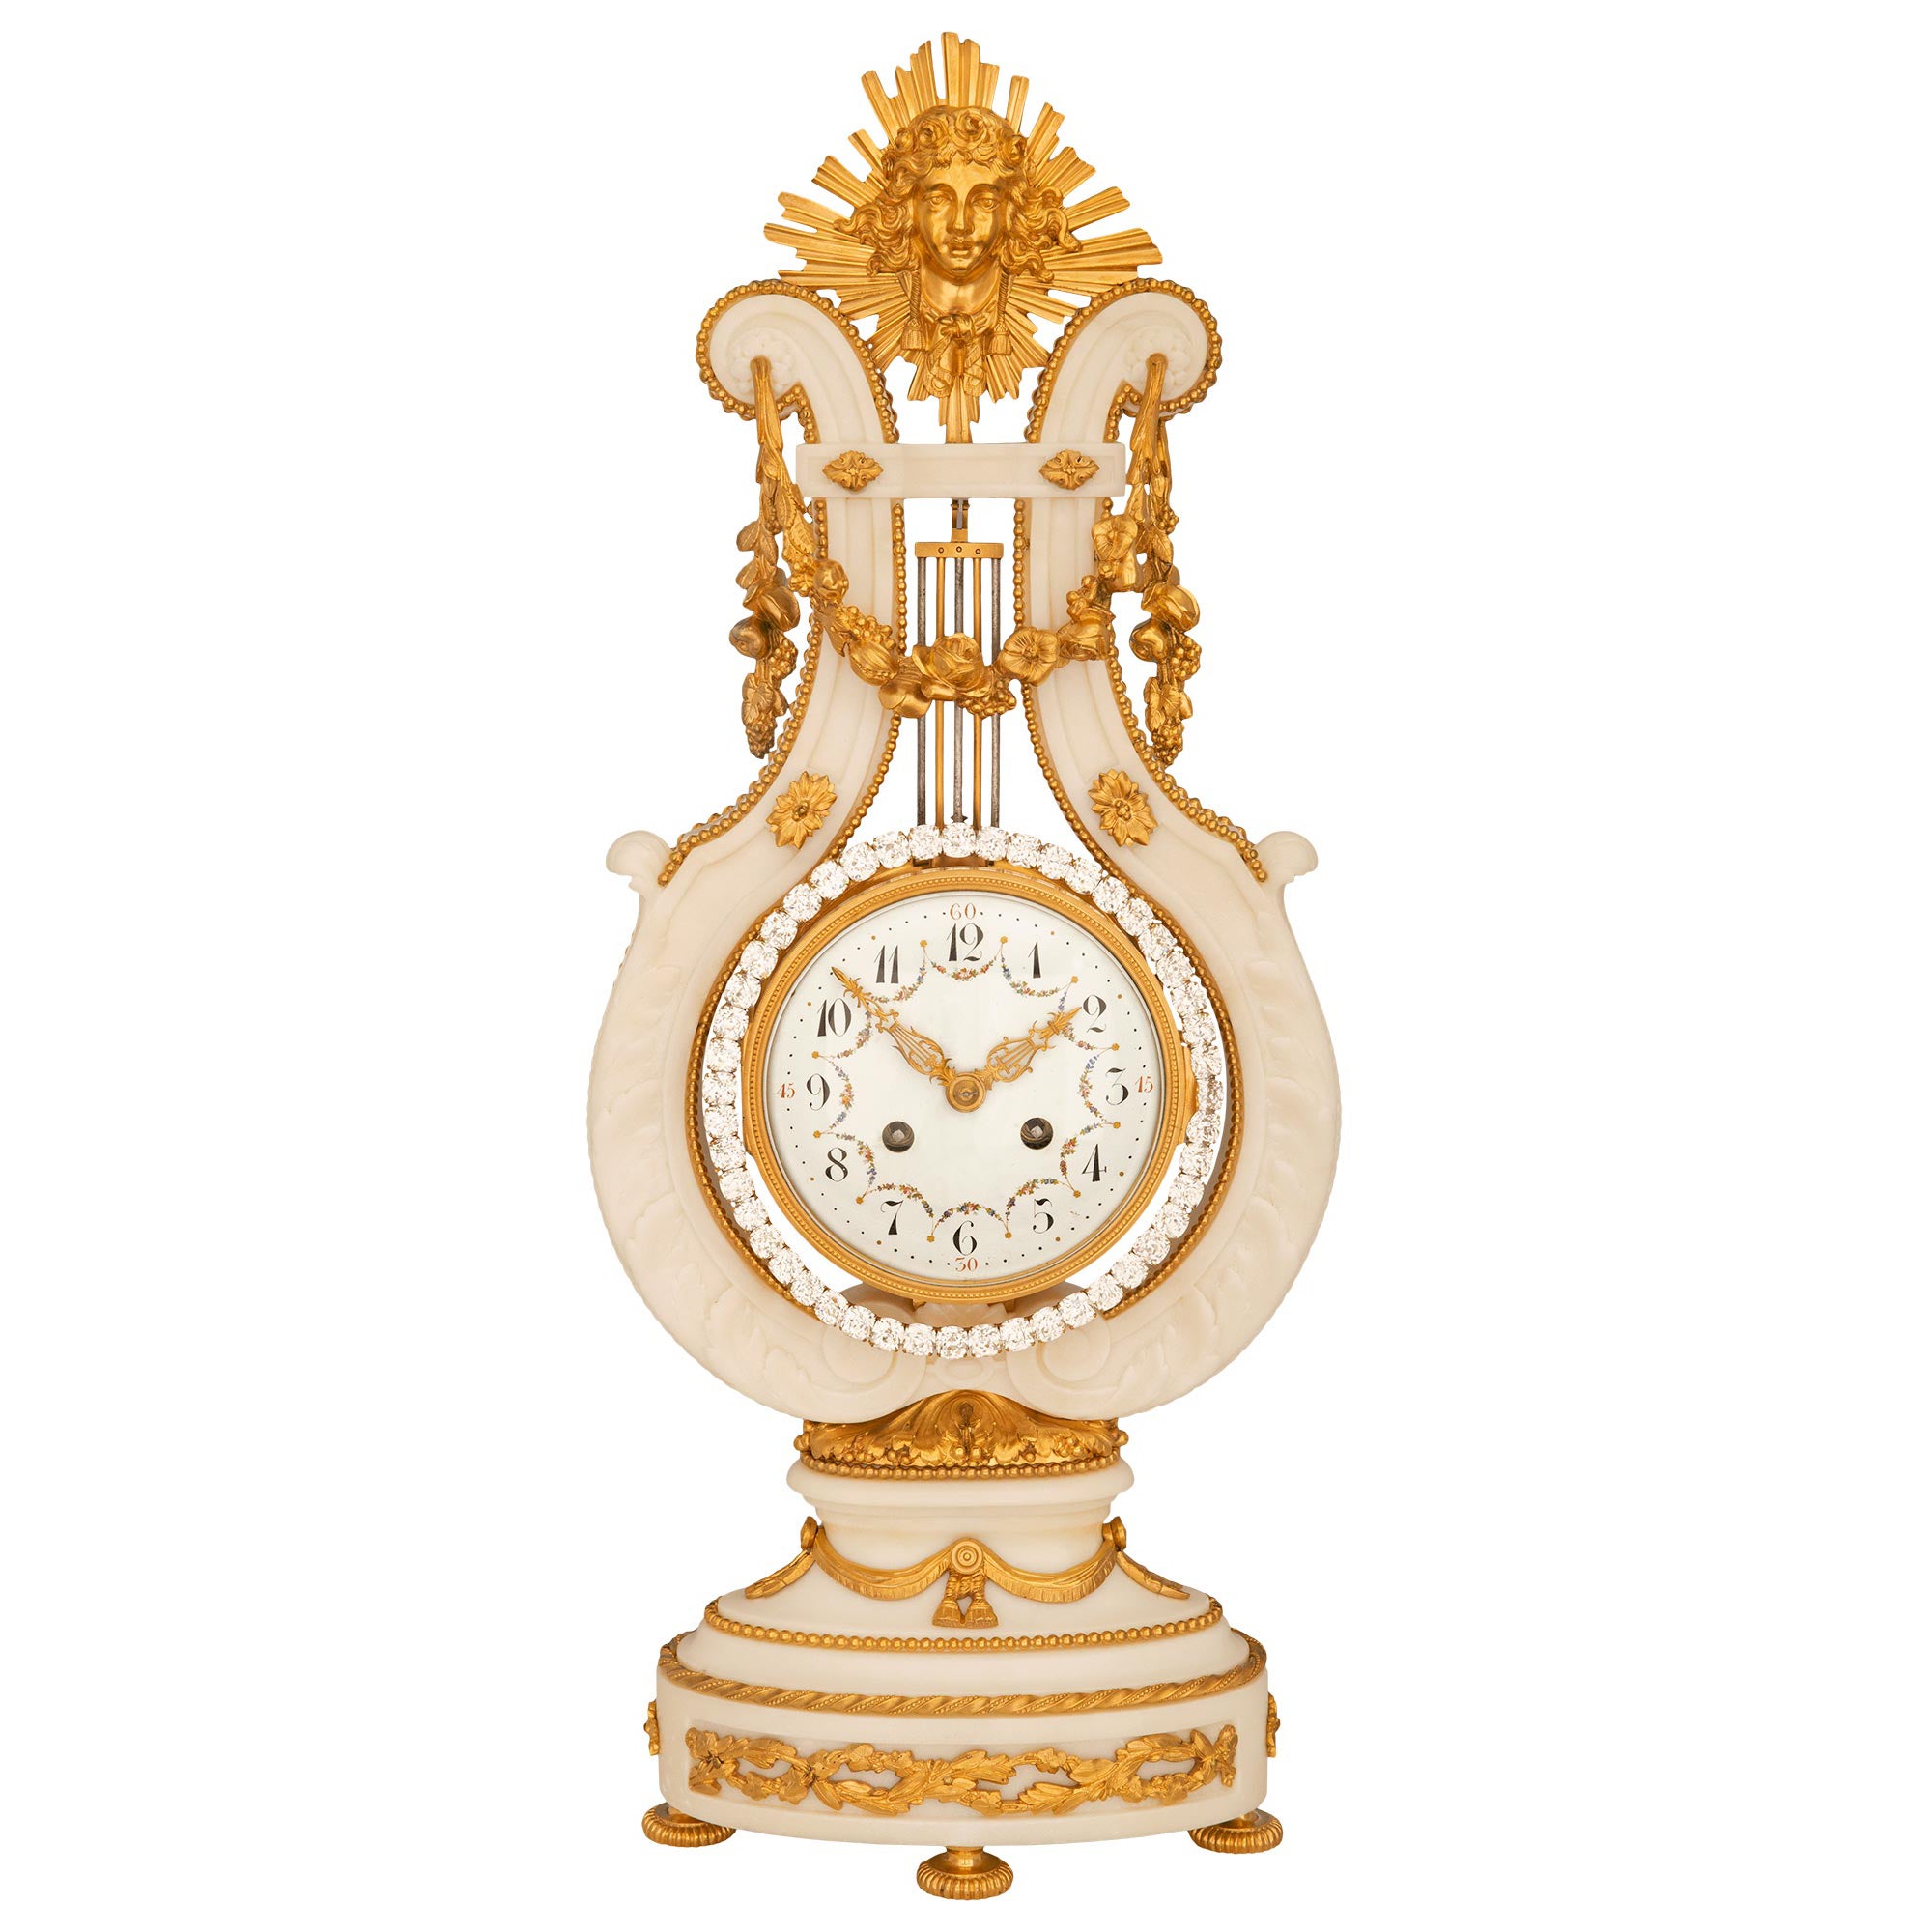 Reloj Francés del Siglo XIX de San Luis XVI de Mármol de Carrara Blanco, Ormolu y Joyas